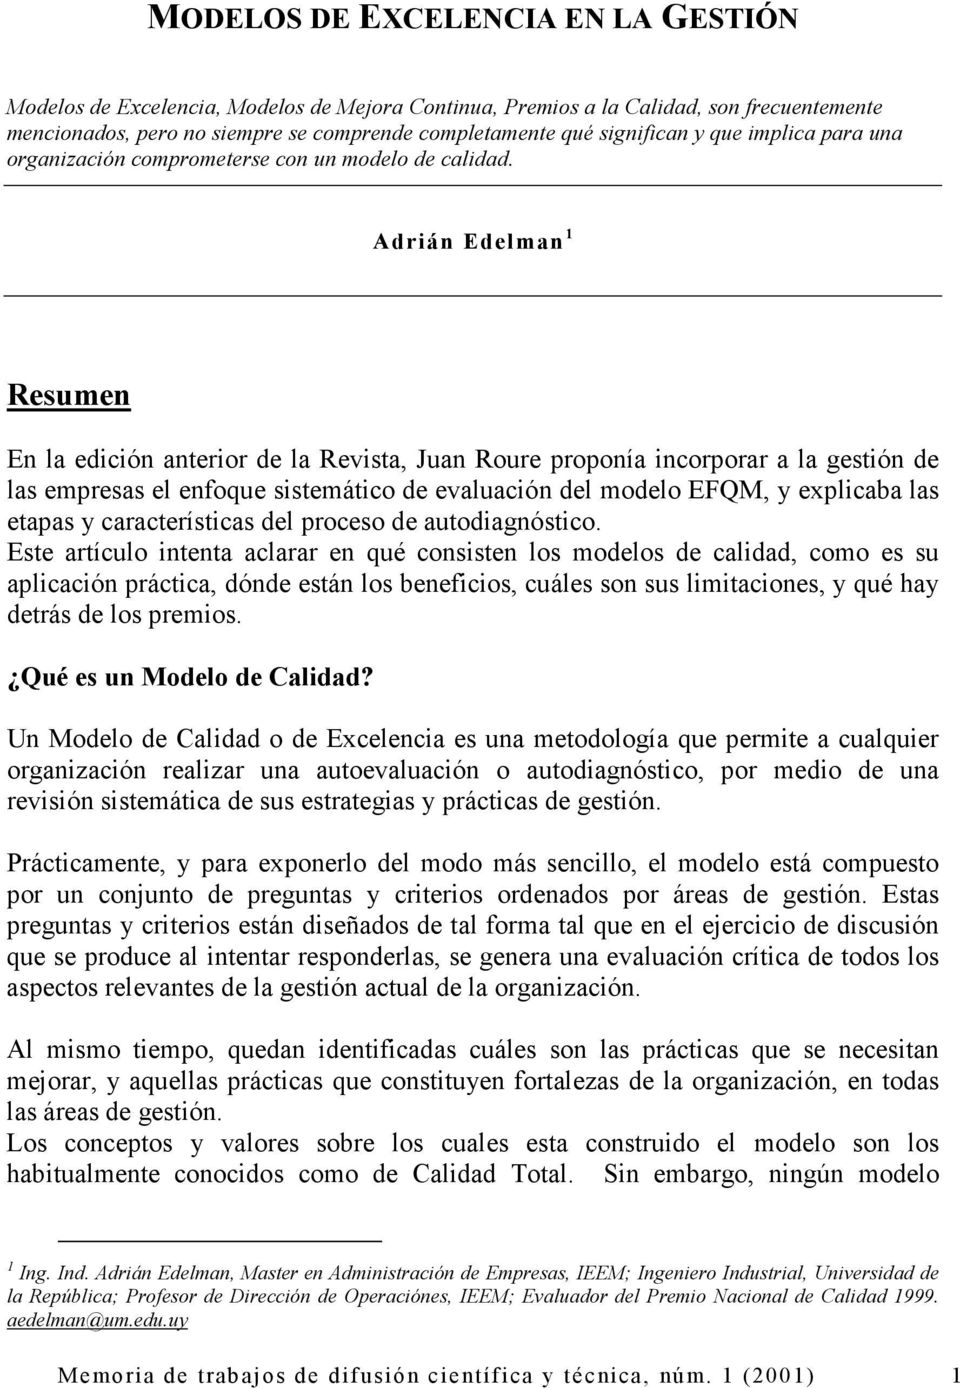 Adrián Edelman 1 Resumen En la edición anterior de la Revista, Juan Roure proponía incorporar a la gestión de las empresas el enfoque sistemático de evaluación del modelo EFQM, y explicaba las etapas